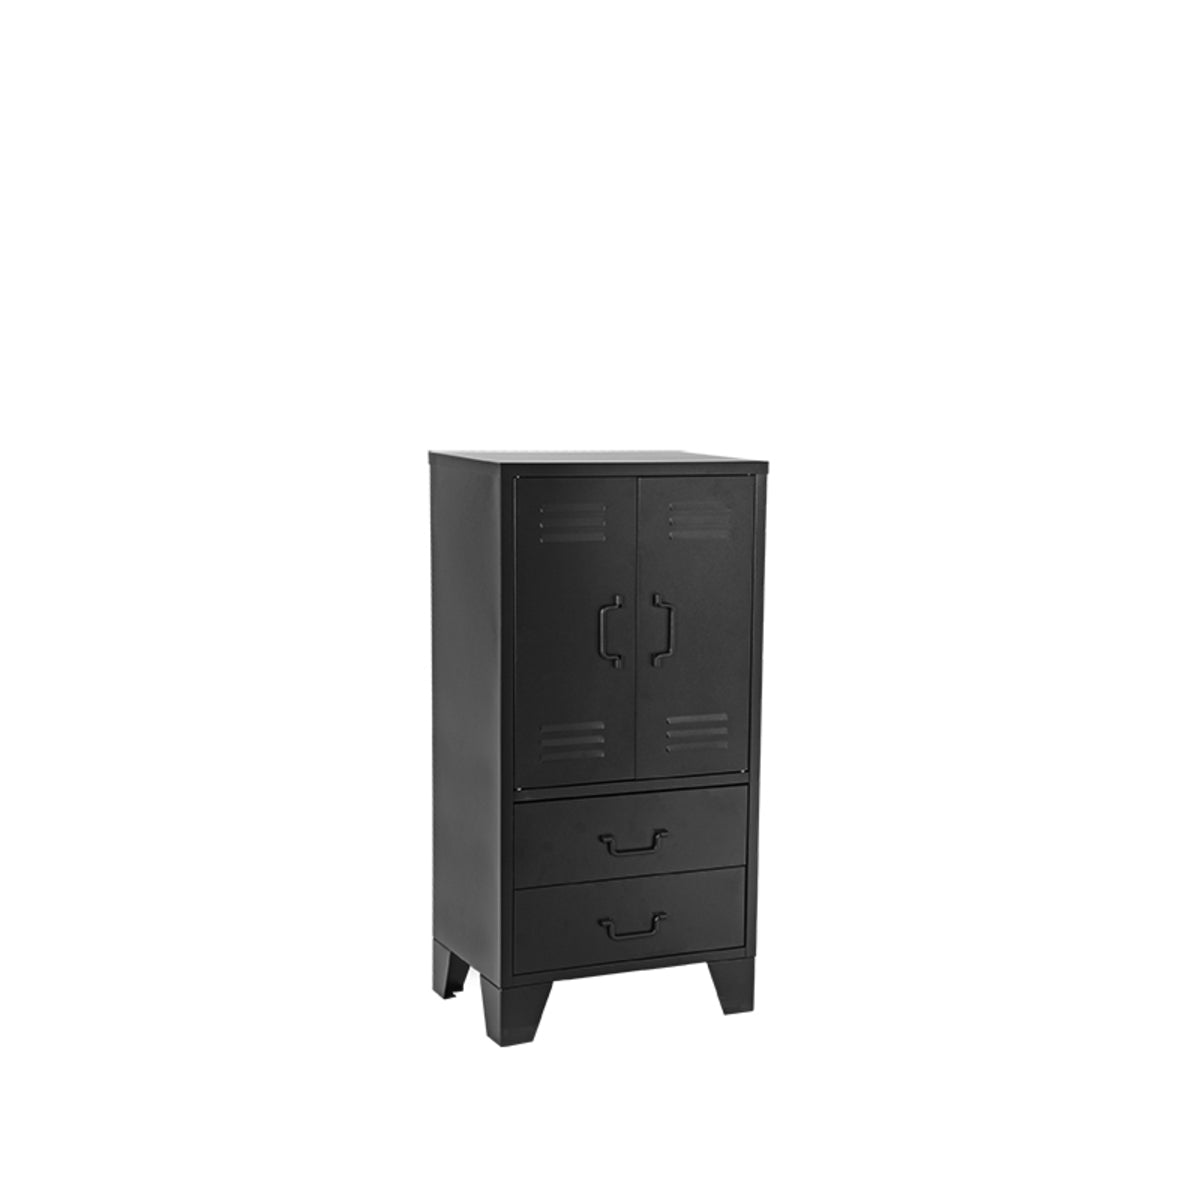 LABEL51 Storage cupboard Fence - Black - Metal - 2-Door low